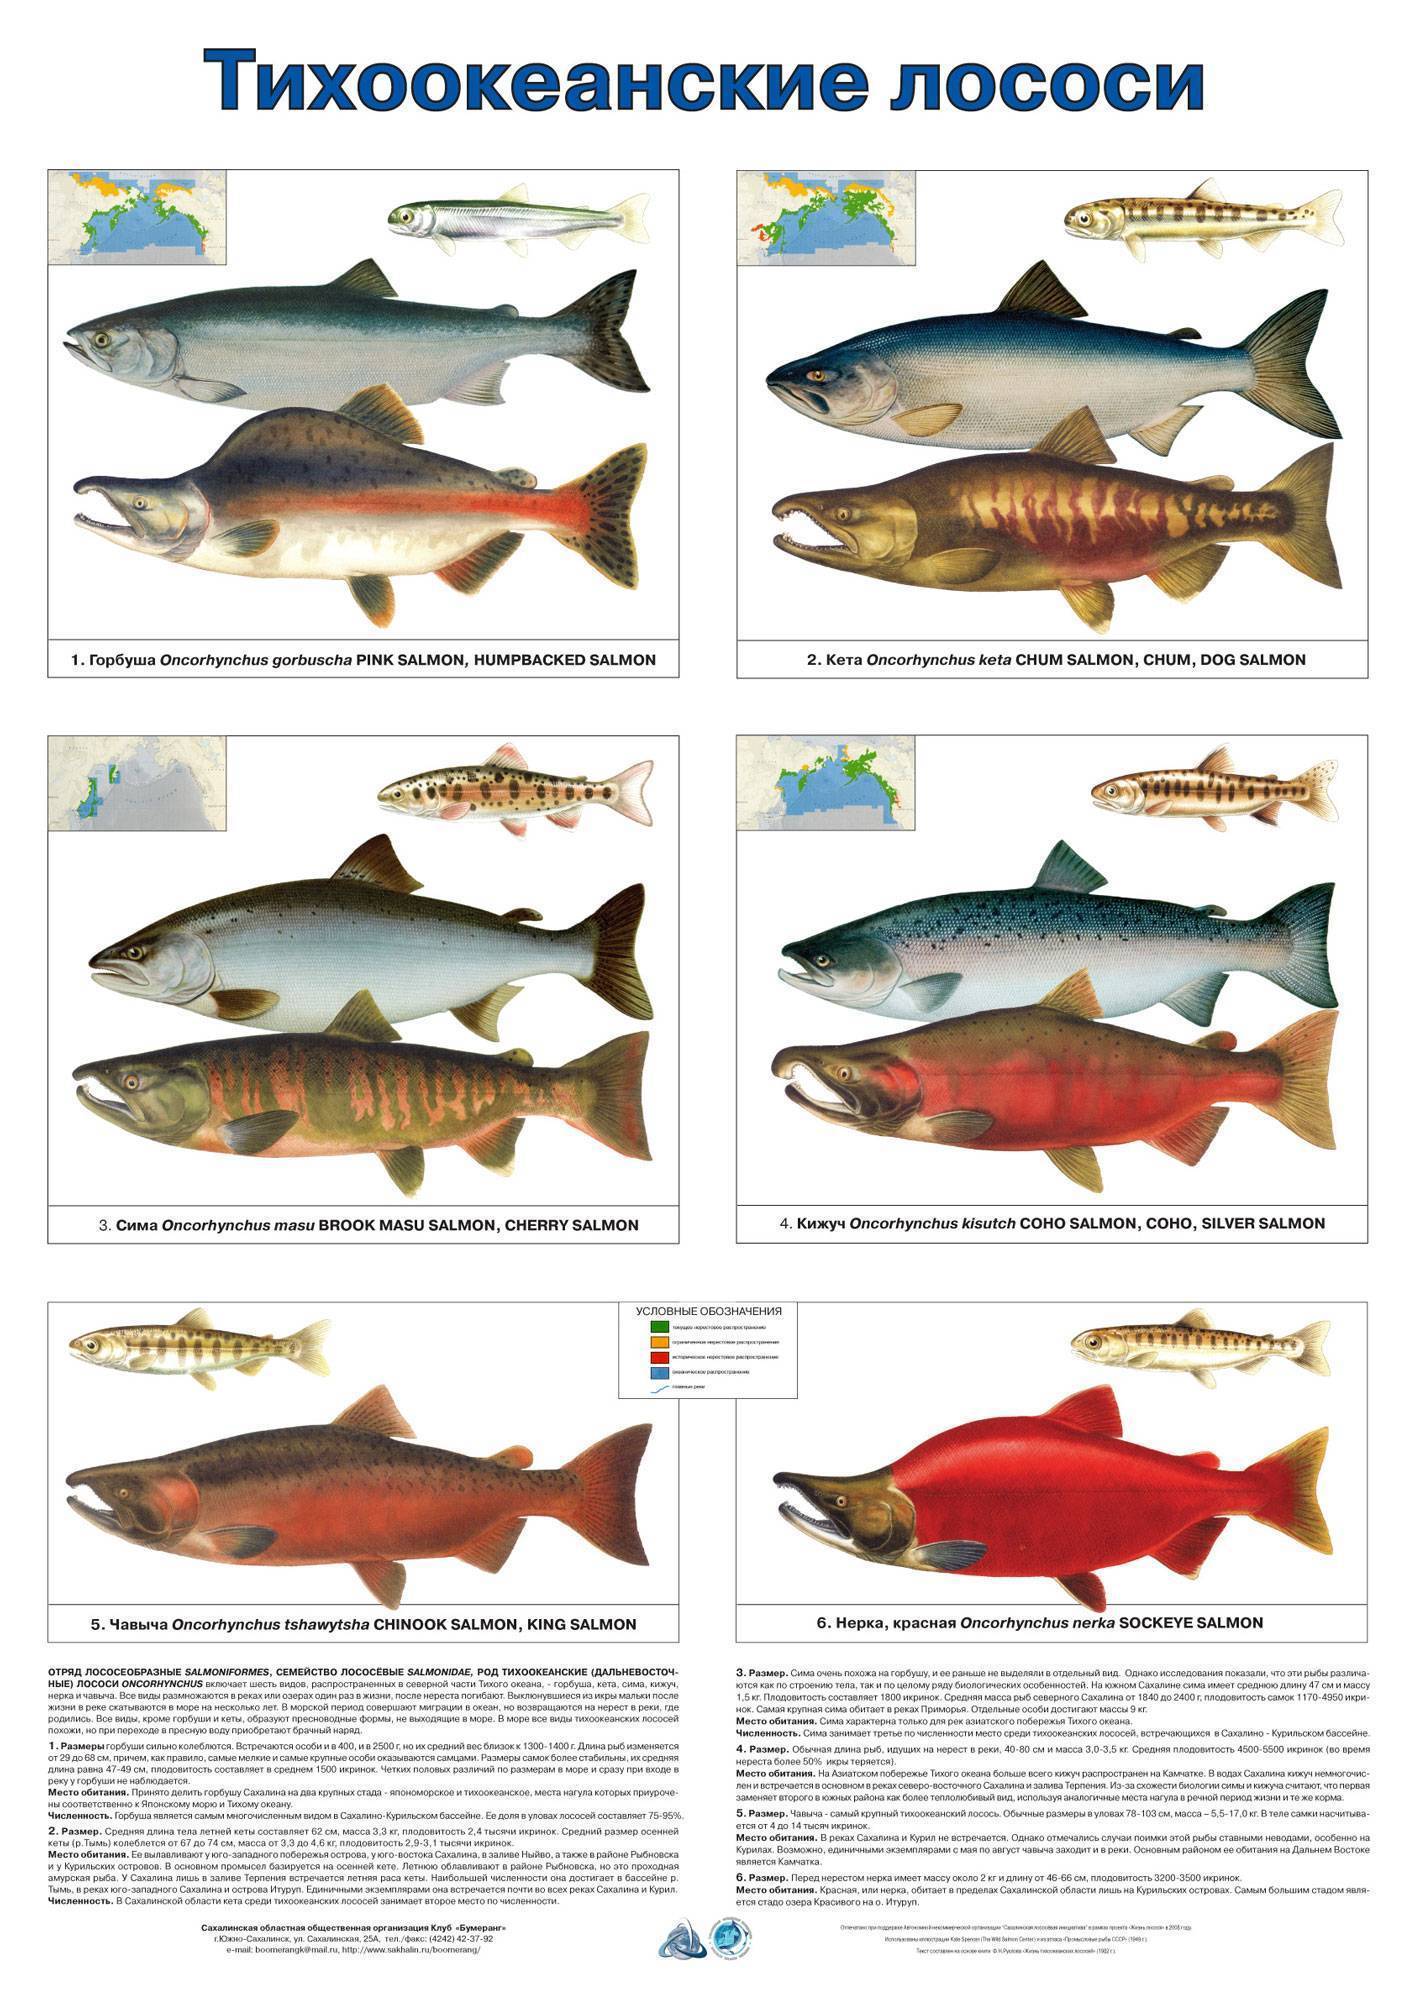 Красная рыба: ареал, морские и речные породы осетровых и лососевых семейств